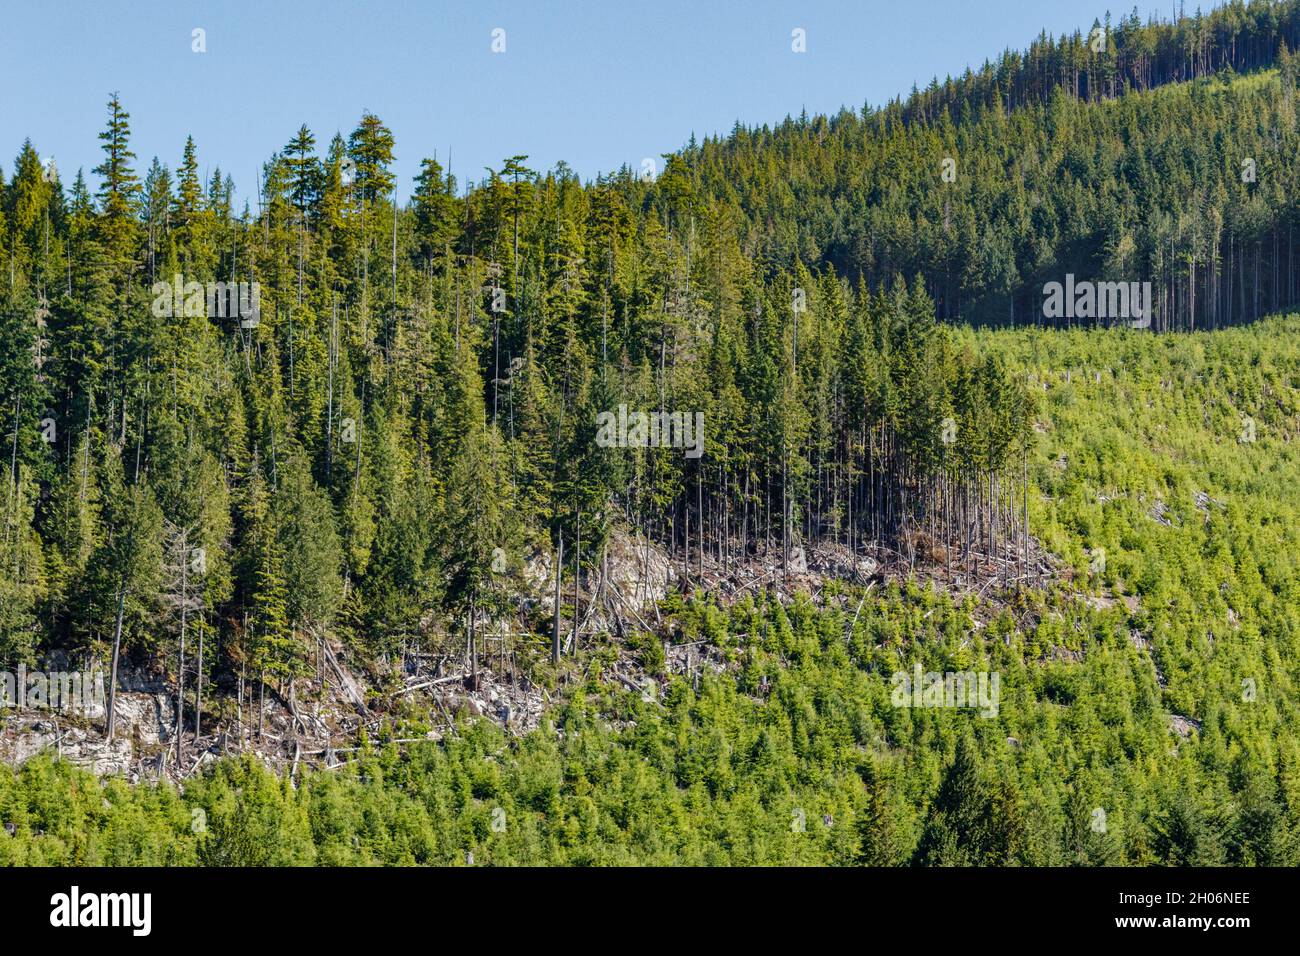 El corte de la tala reciente está al lado de un corte claro anterior, que ahora se enverde después de replantar en una ladera escarpada en la costa de la Columbia Británica. Foto de stock